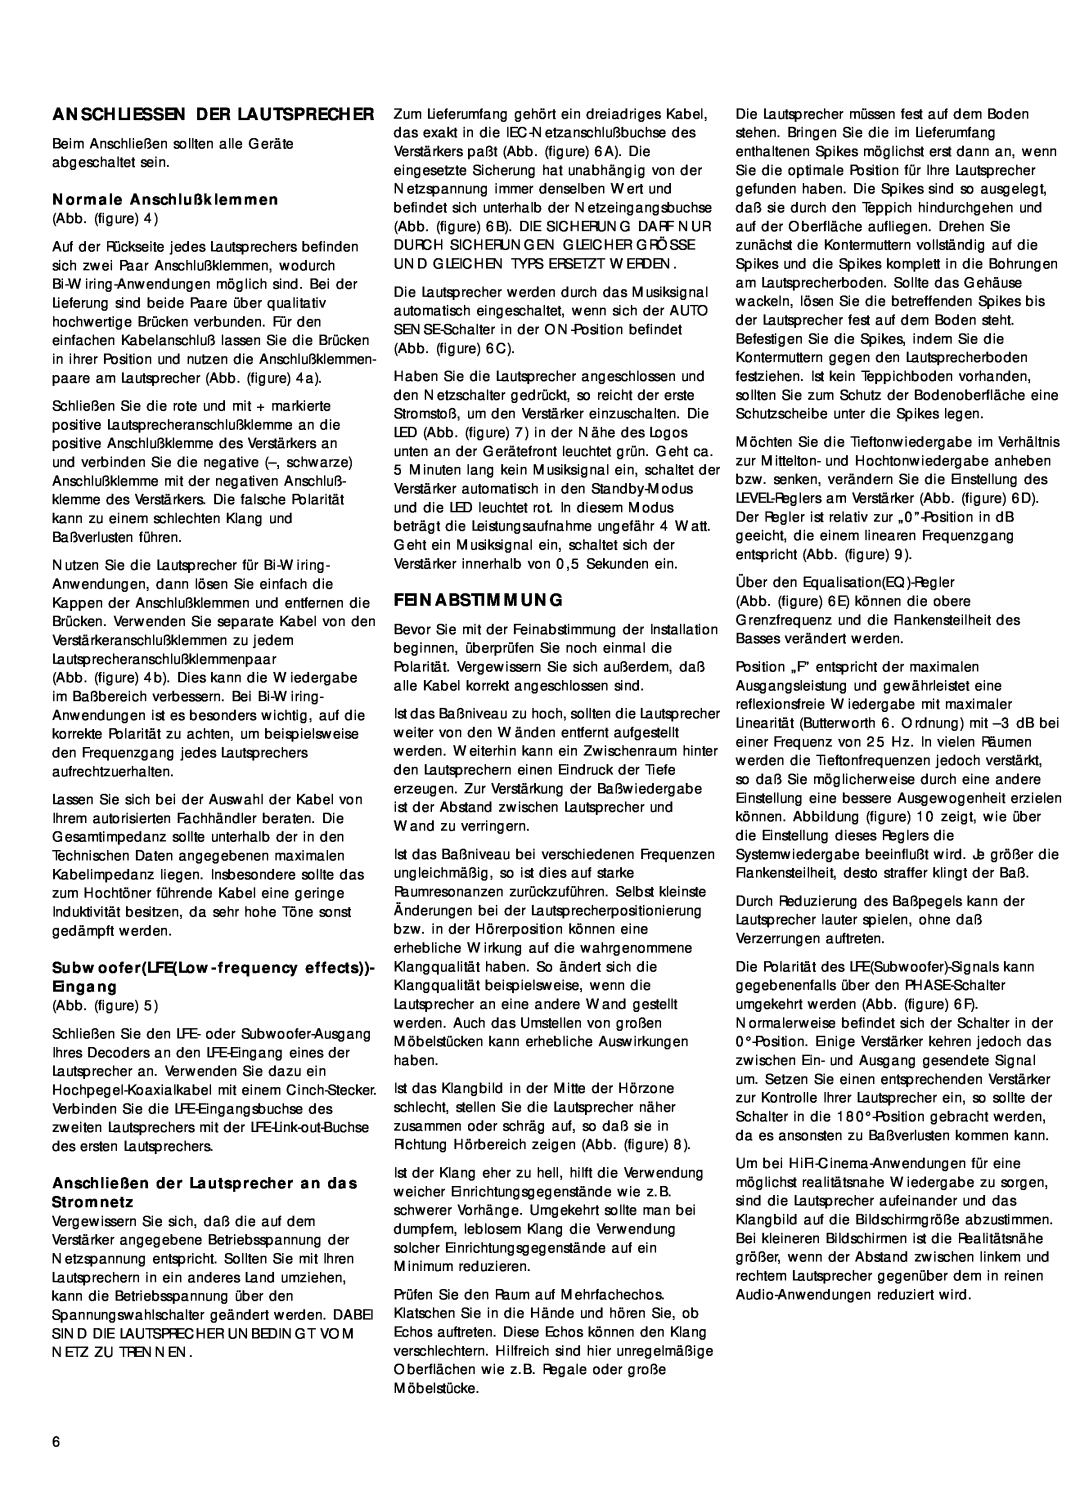 Bowers & Wilkins 600 Series2 Anschliessen Der Lautsprecher, Feinabstimmung, Normale Anschlußklemmen Abb. figure 